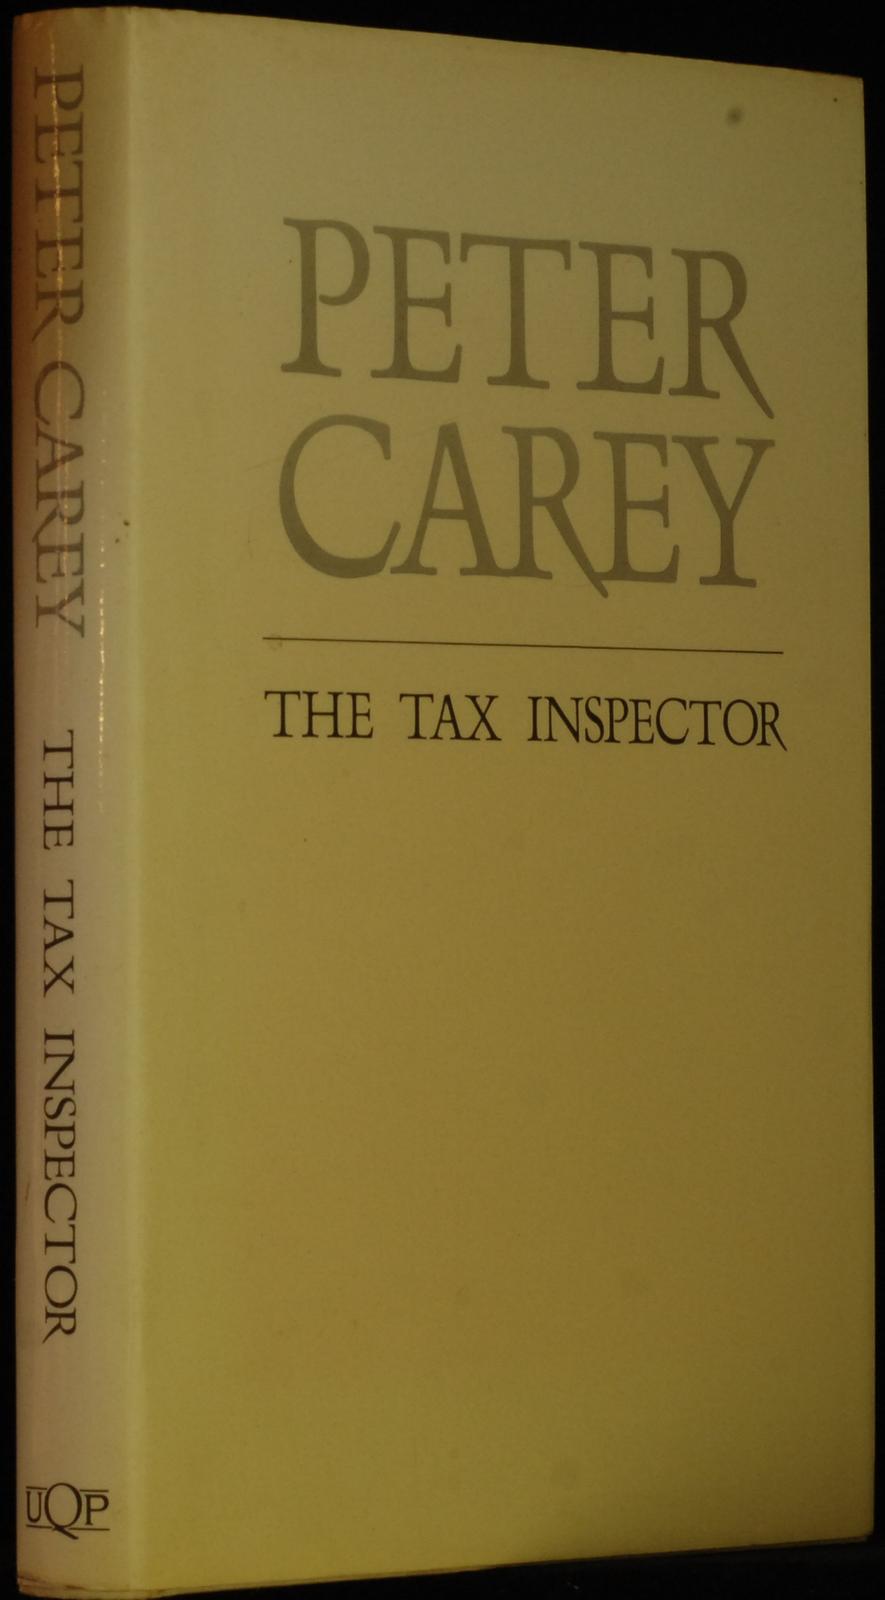 mbb006847c_-_Carey_Peter_-_The_Tax_Inspector.jpg